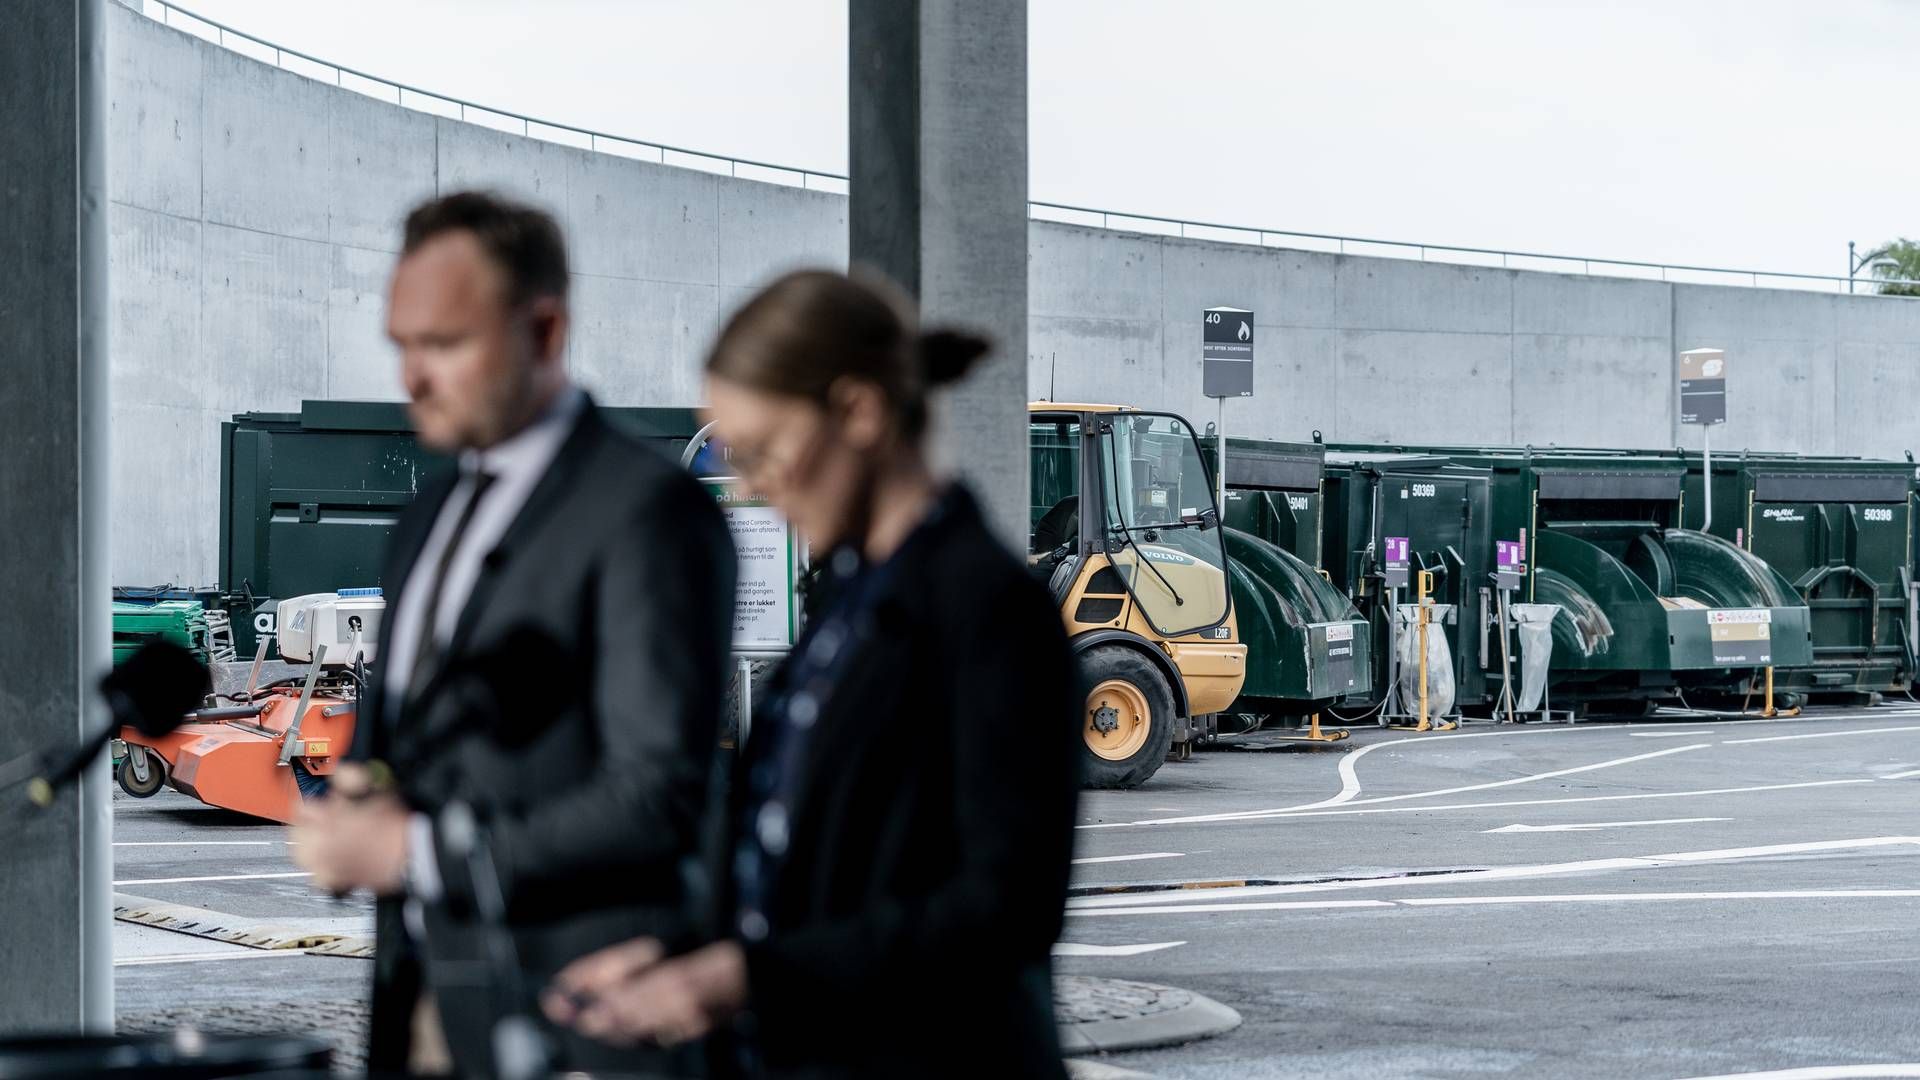 Miljøminister Lea Wermelin (S) og klima- energi- og forsyningsminister Dan Jørgensen (S) præsenterede mandag d. 18 maj regeringens bud på en mere grøn affaldssektor med langt mindre CO2-udledning. | Foto: Aleksander Klug